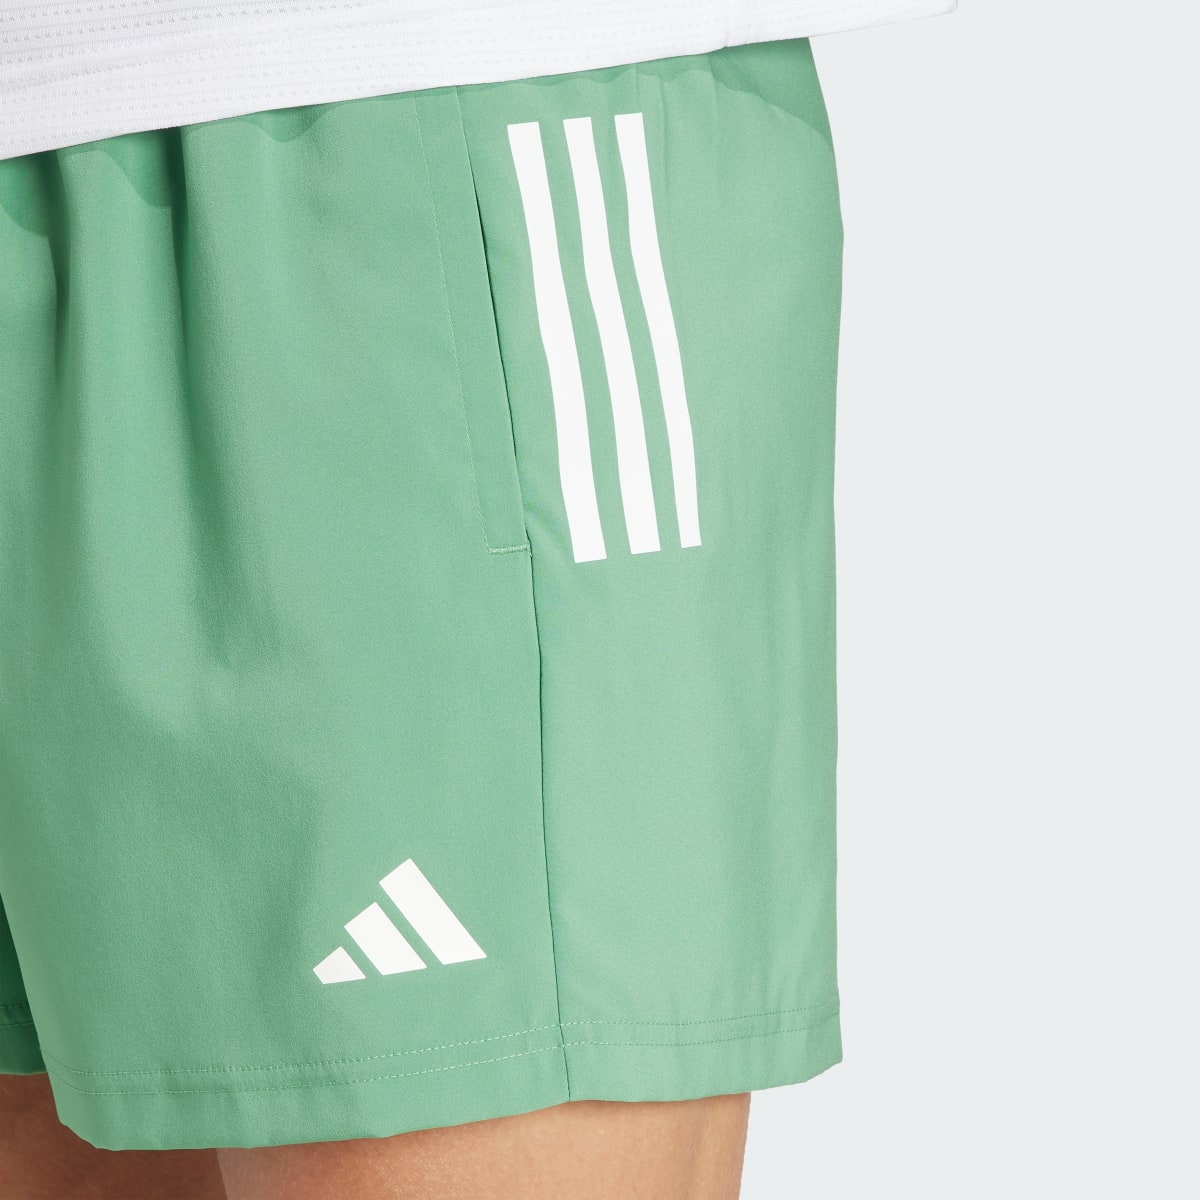 Adidas Own The Run Shorts. 5